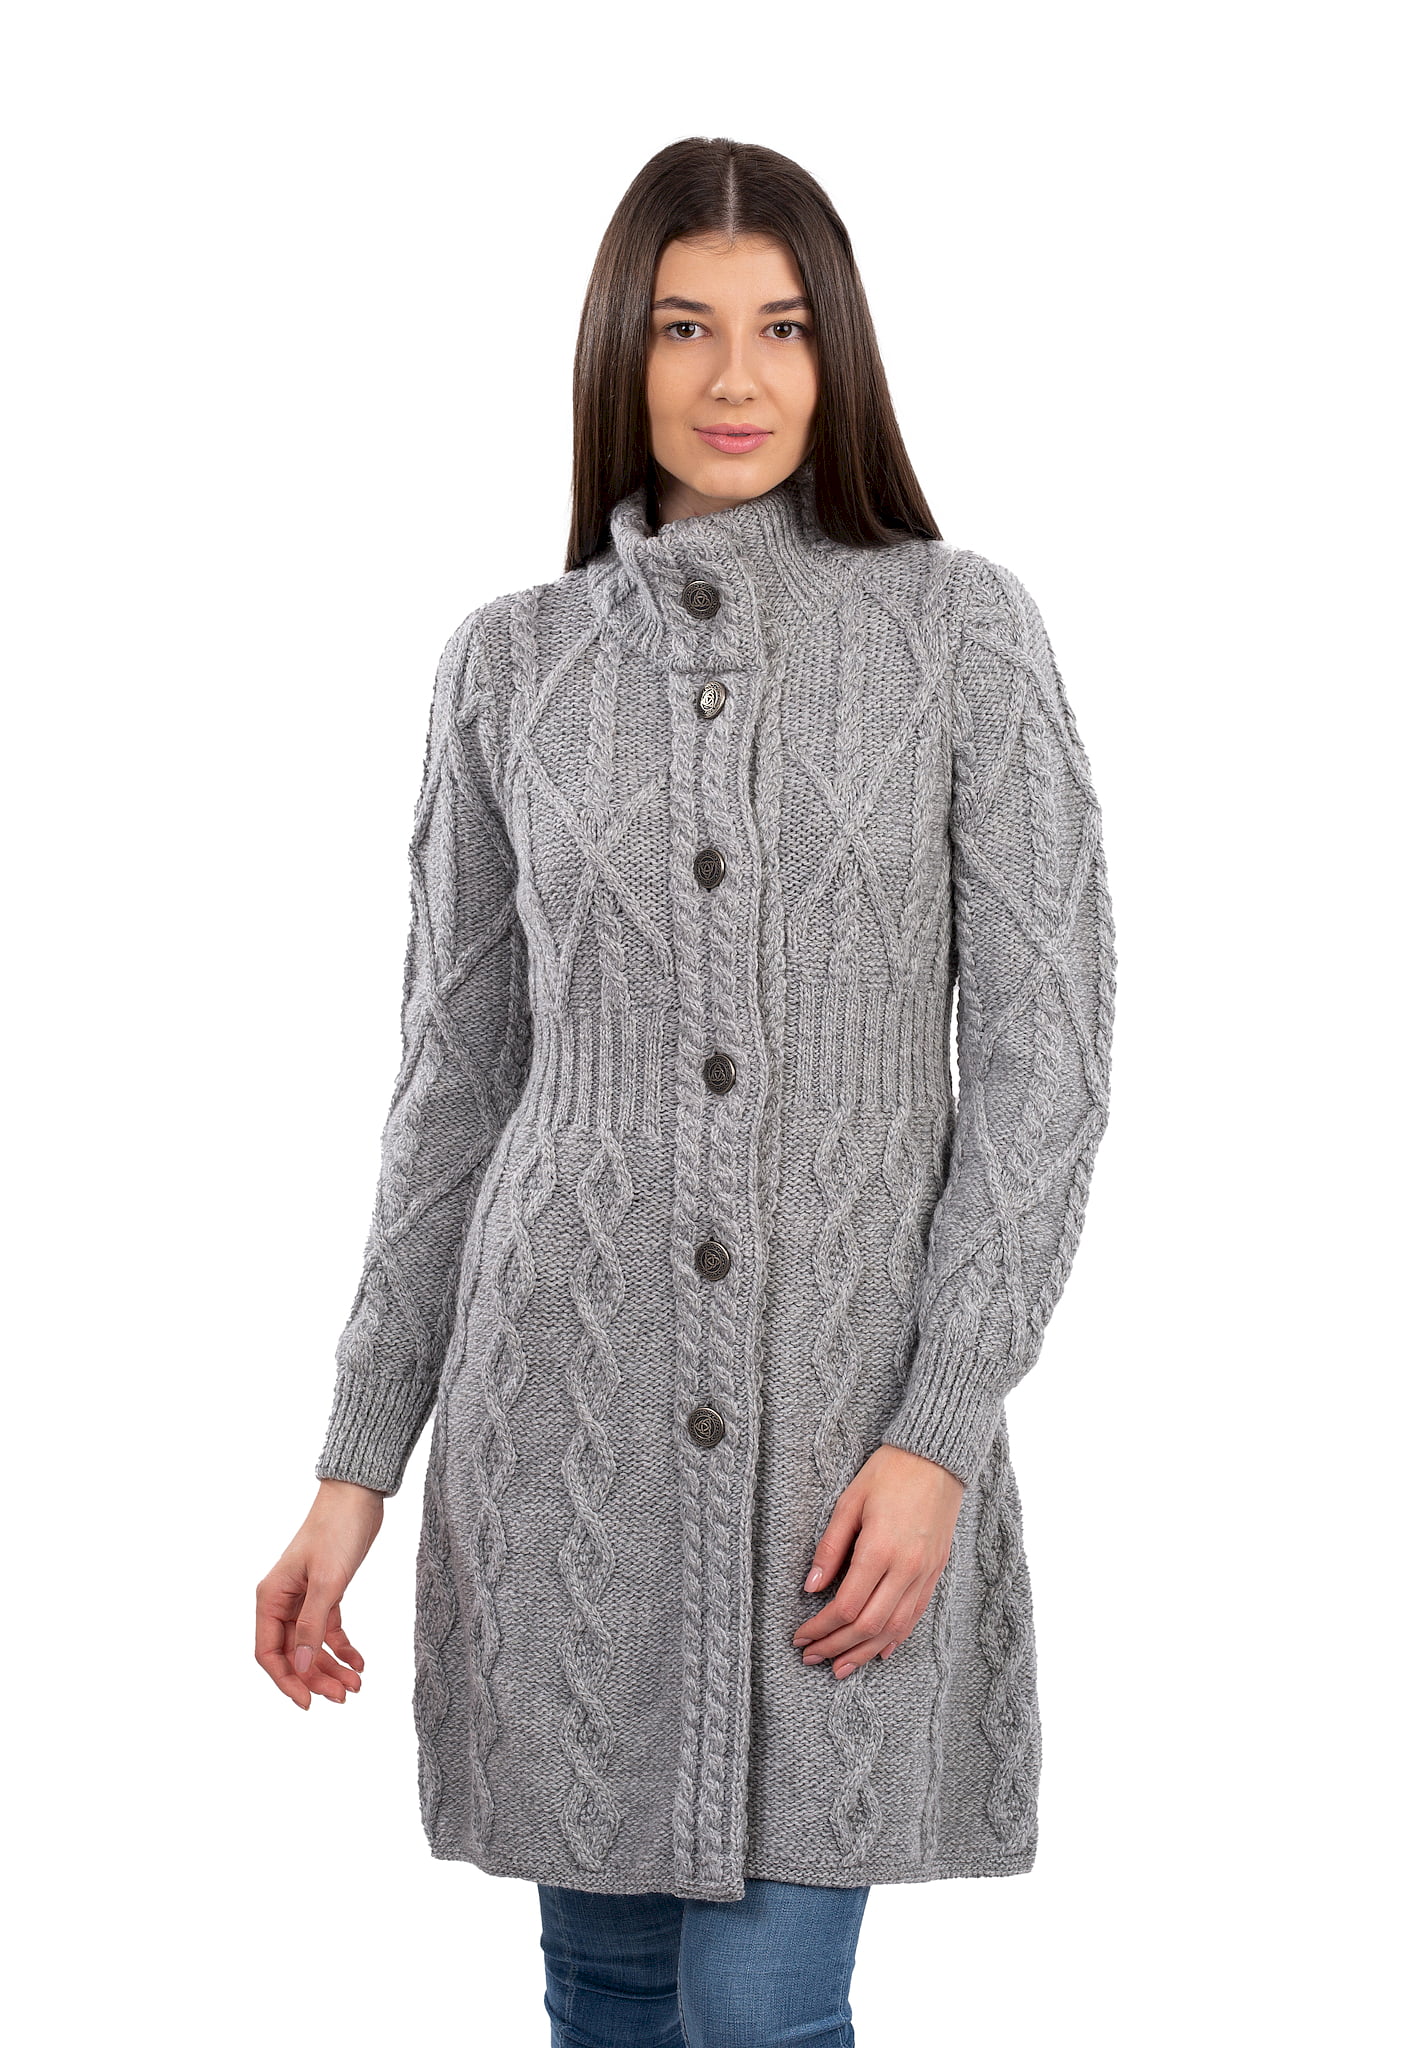 SAOL - SAOL Irish Cardigan Sweater for Women's 100% Merino Wool Aran ...